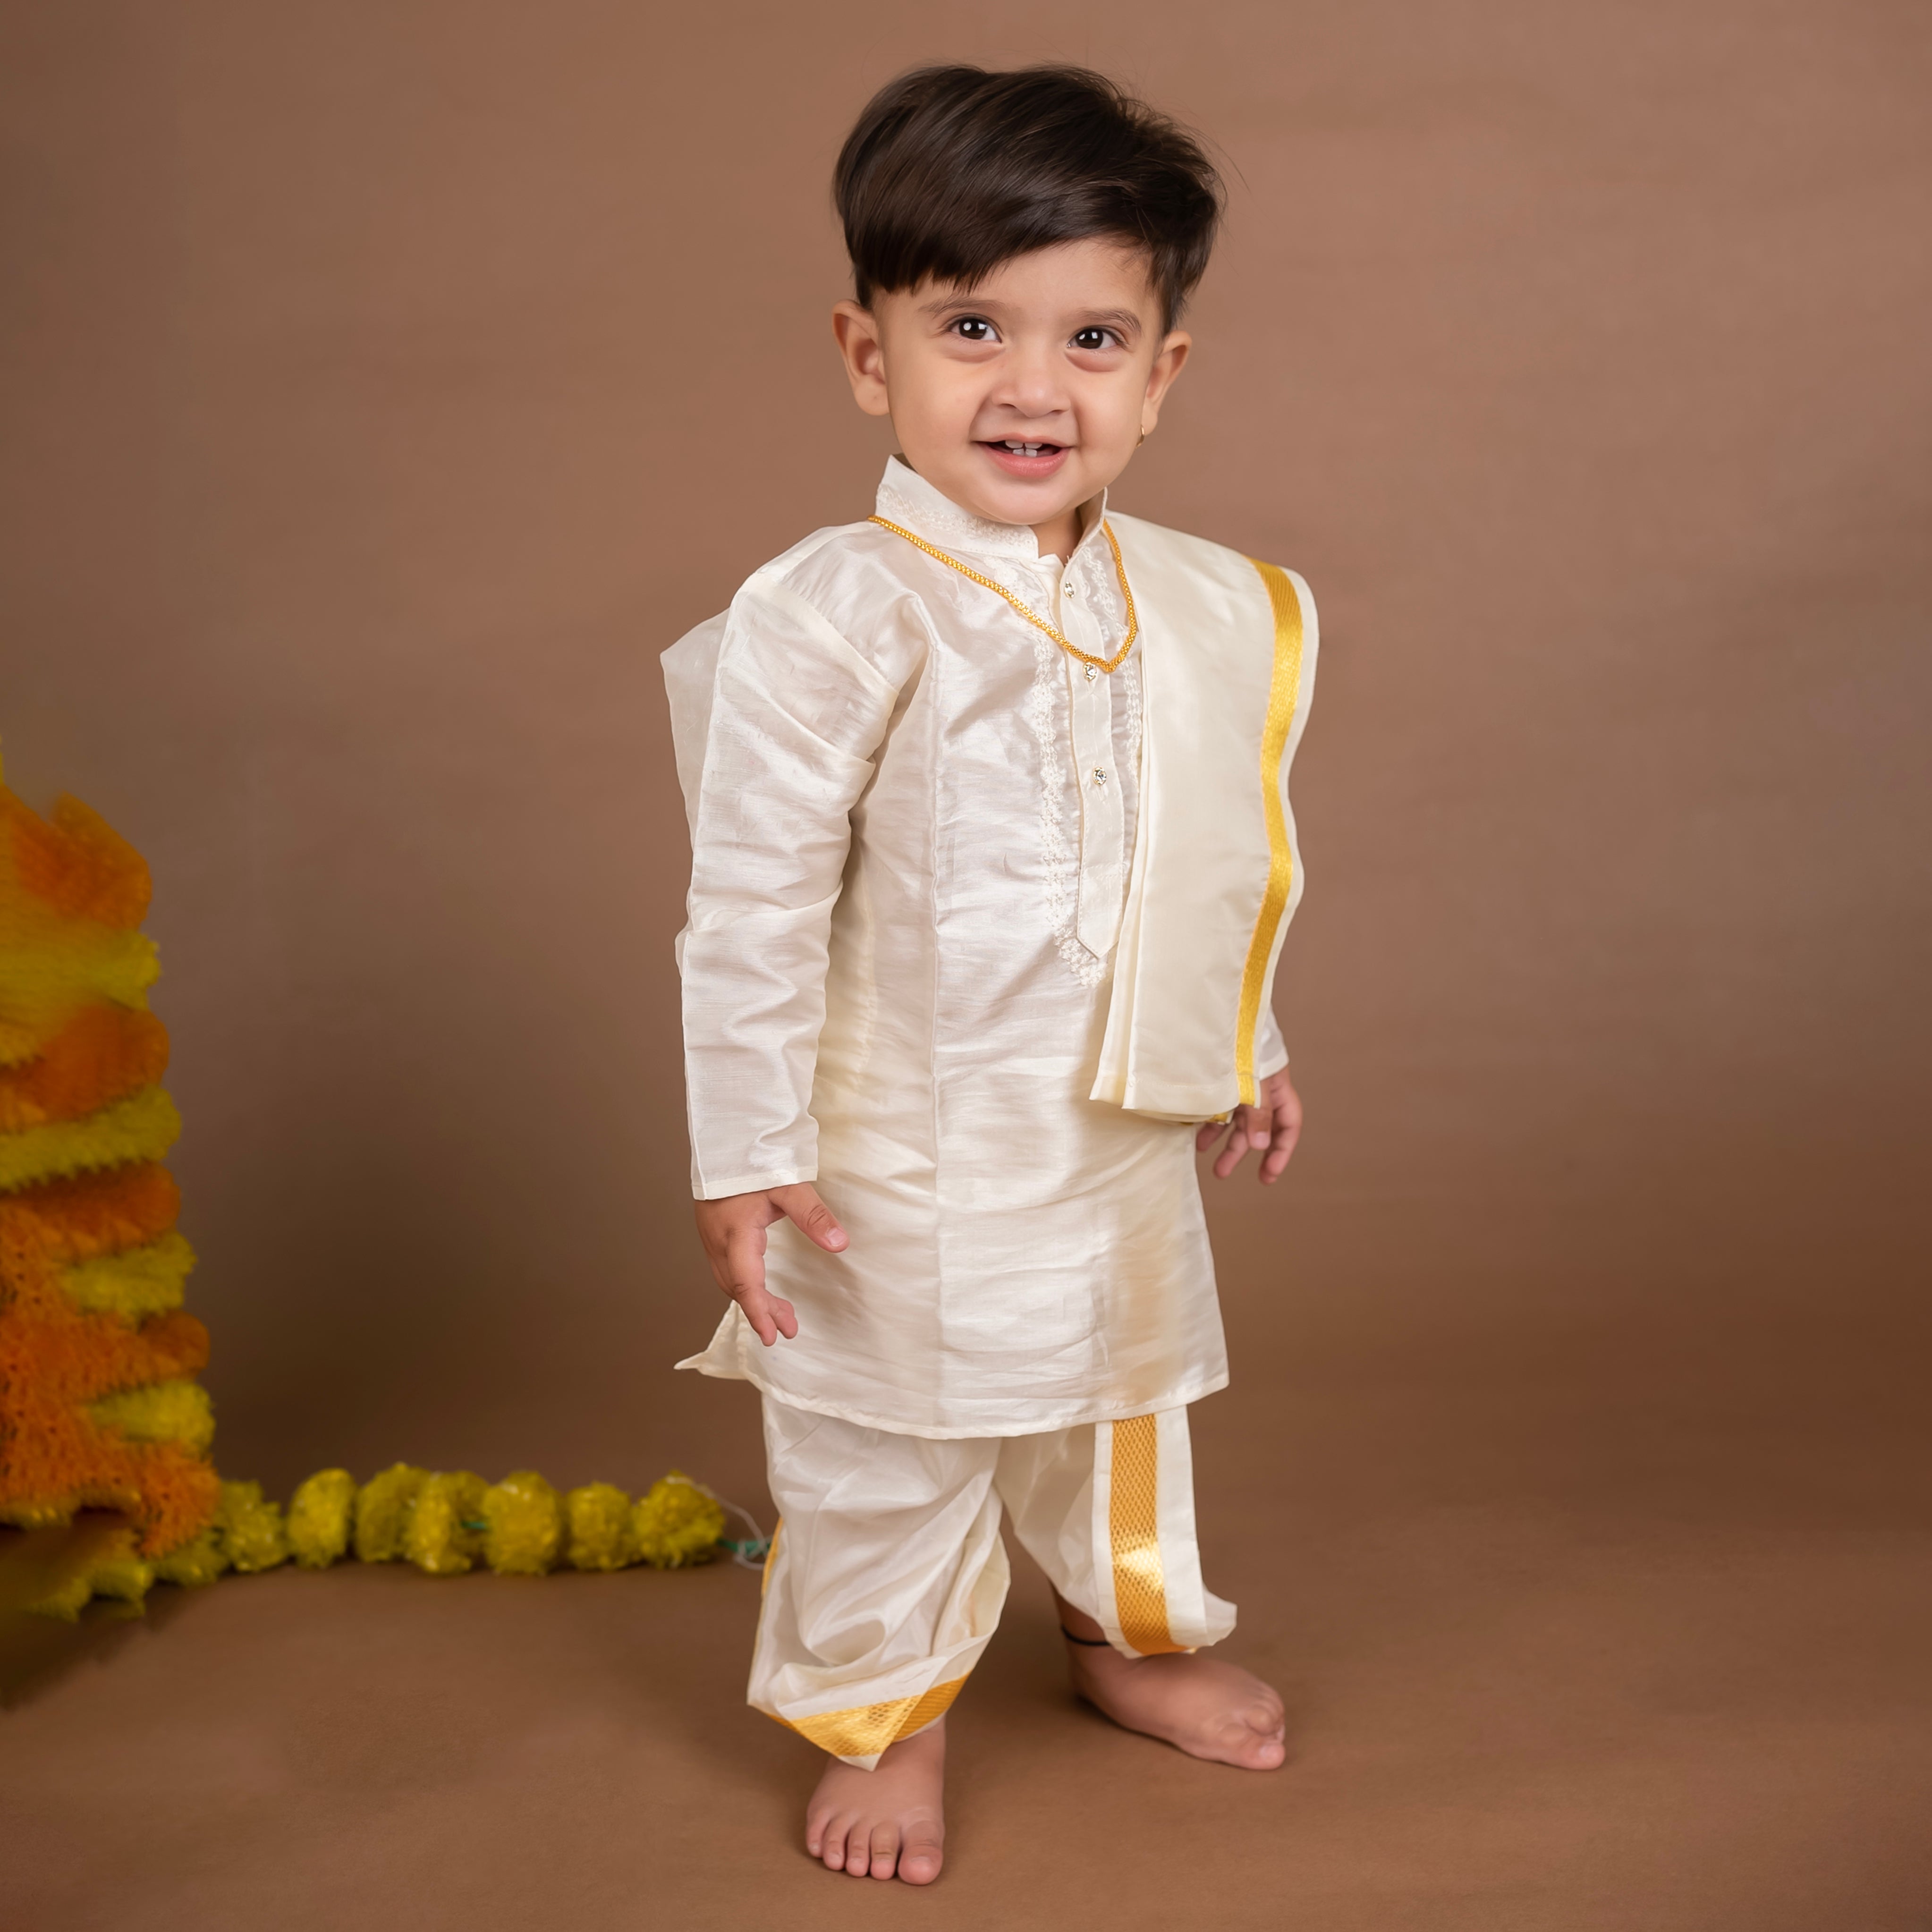 Baby Photoshoot Ideas for Diwali and Ganesh Chaturthi | Tiny Lane